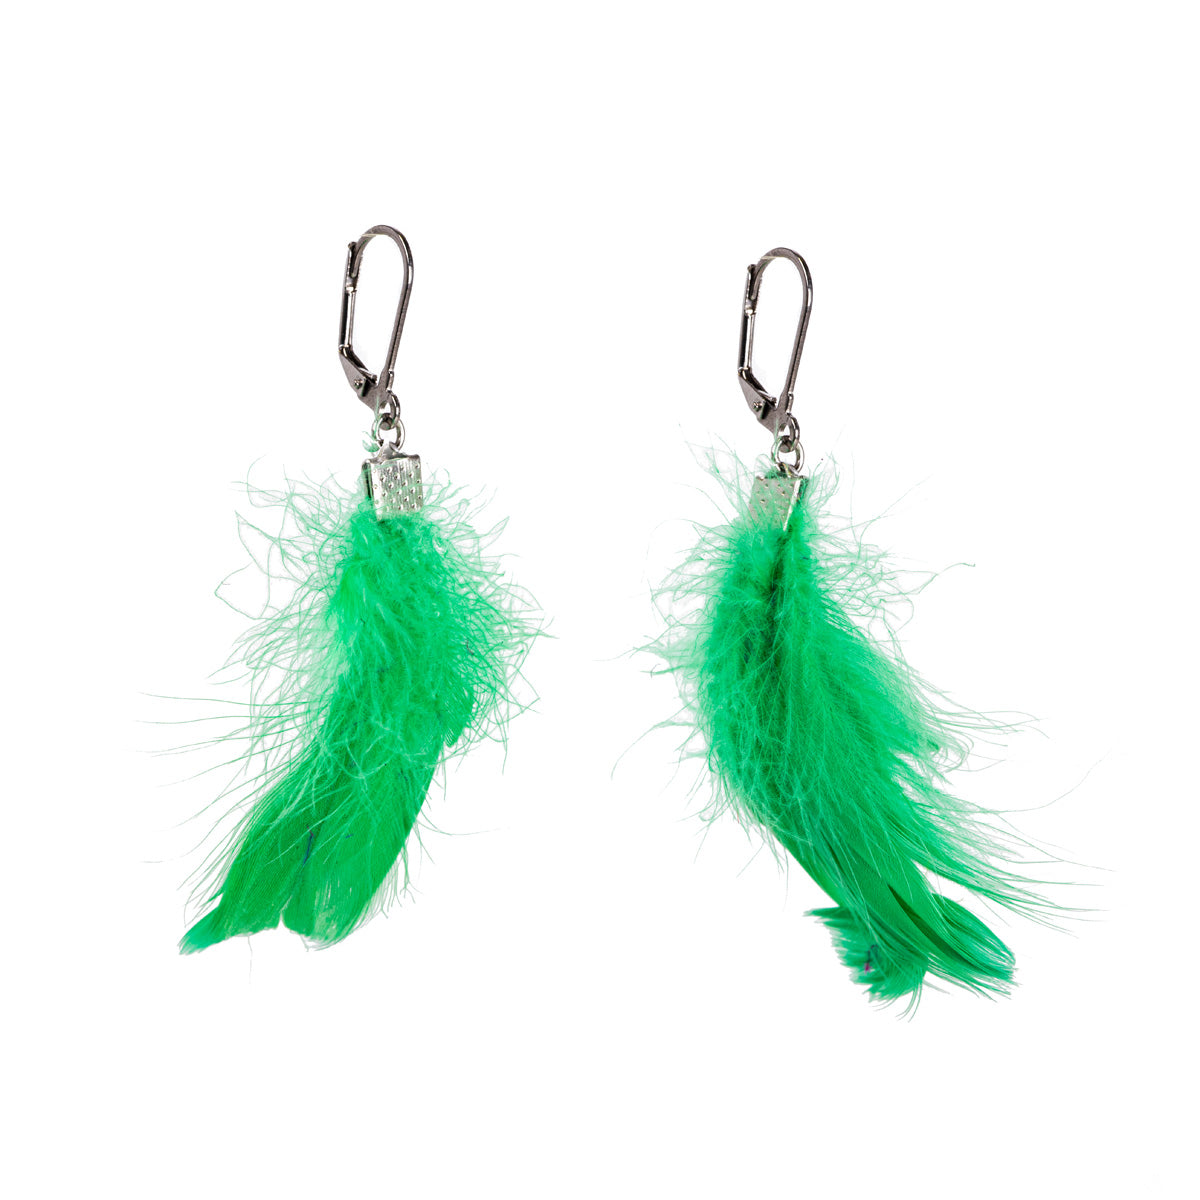 Feather earrings (steel 316L)